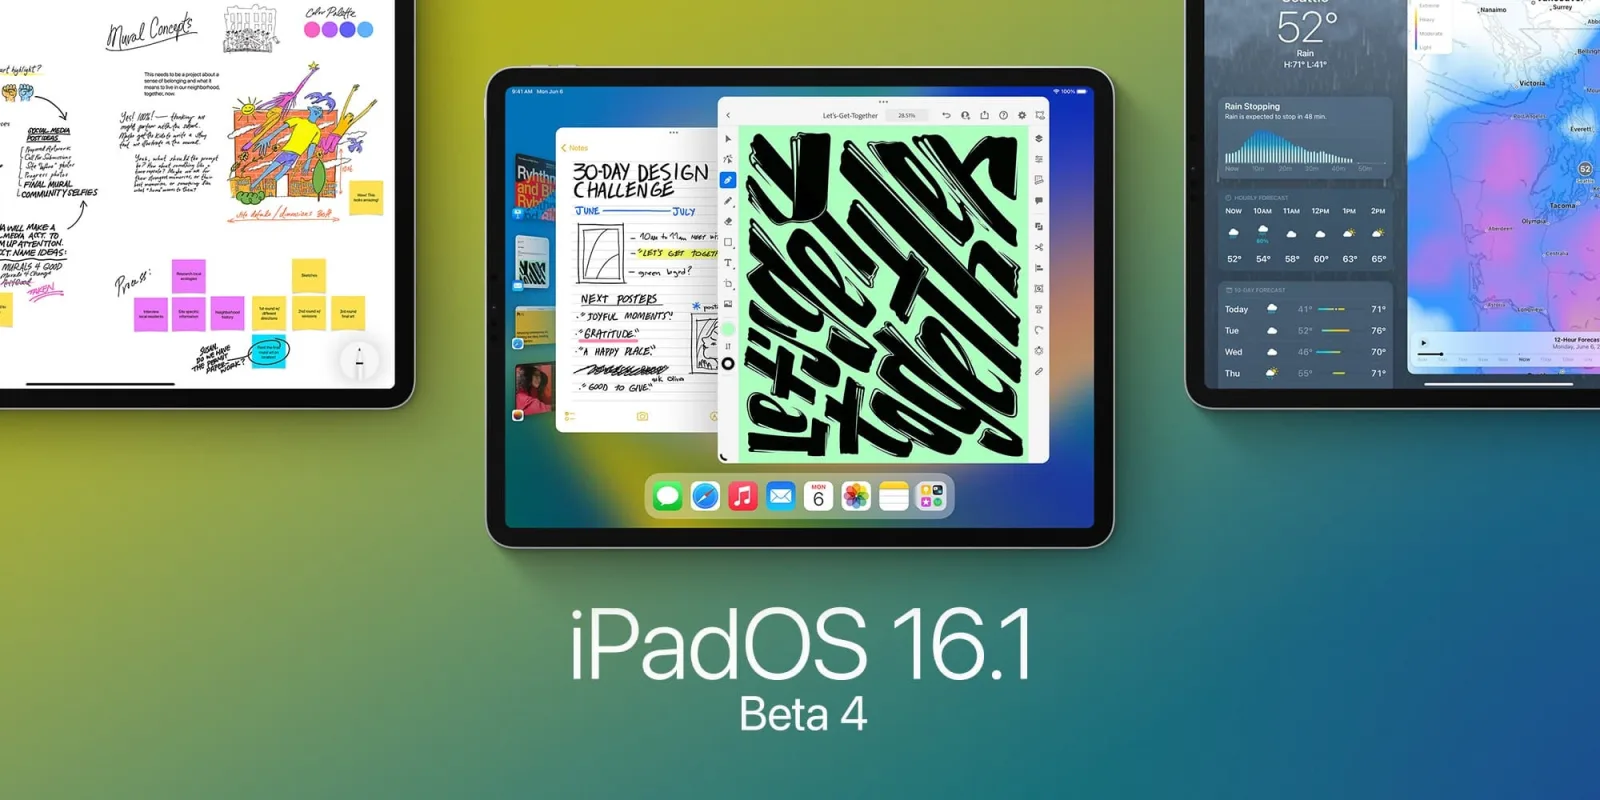 iPadOS 16.1 